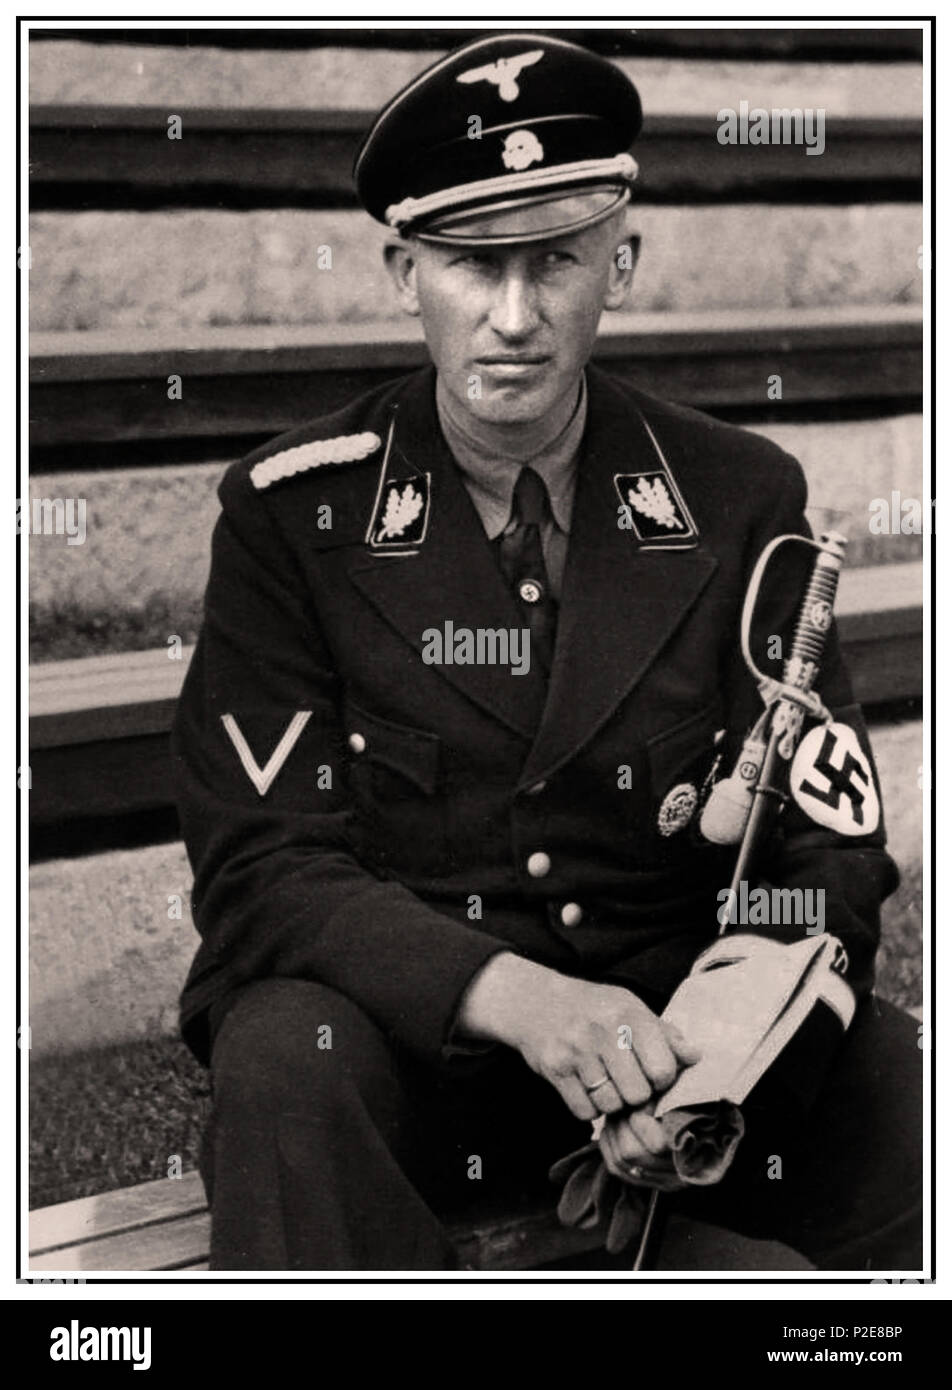 1940 HEYDRICH WAFFEN SS NAZI Reinhard Tristan Eugen Heydrich était un haut fonctionnaire allemand nazi pendant la Seconde Guerre mondiale, et un architecte principal de l'Holocauste. Il était un SS-Obergruppenführer und General der Polizei ainsi que le chef du bureau principal de sécurité de Reich. L’un des officiers de confiance et privilégiés d’Adolf Hitler. Assassinés par soi-même en sacrifiant de courageux combattants de la résistance tchèque le 4 juin 1942, Prague, République tchèque Banque D'Images